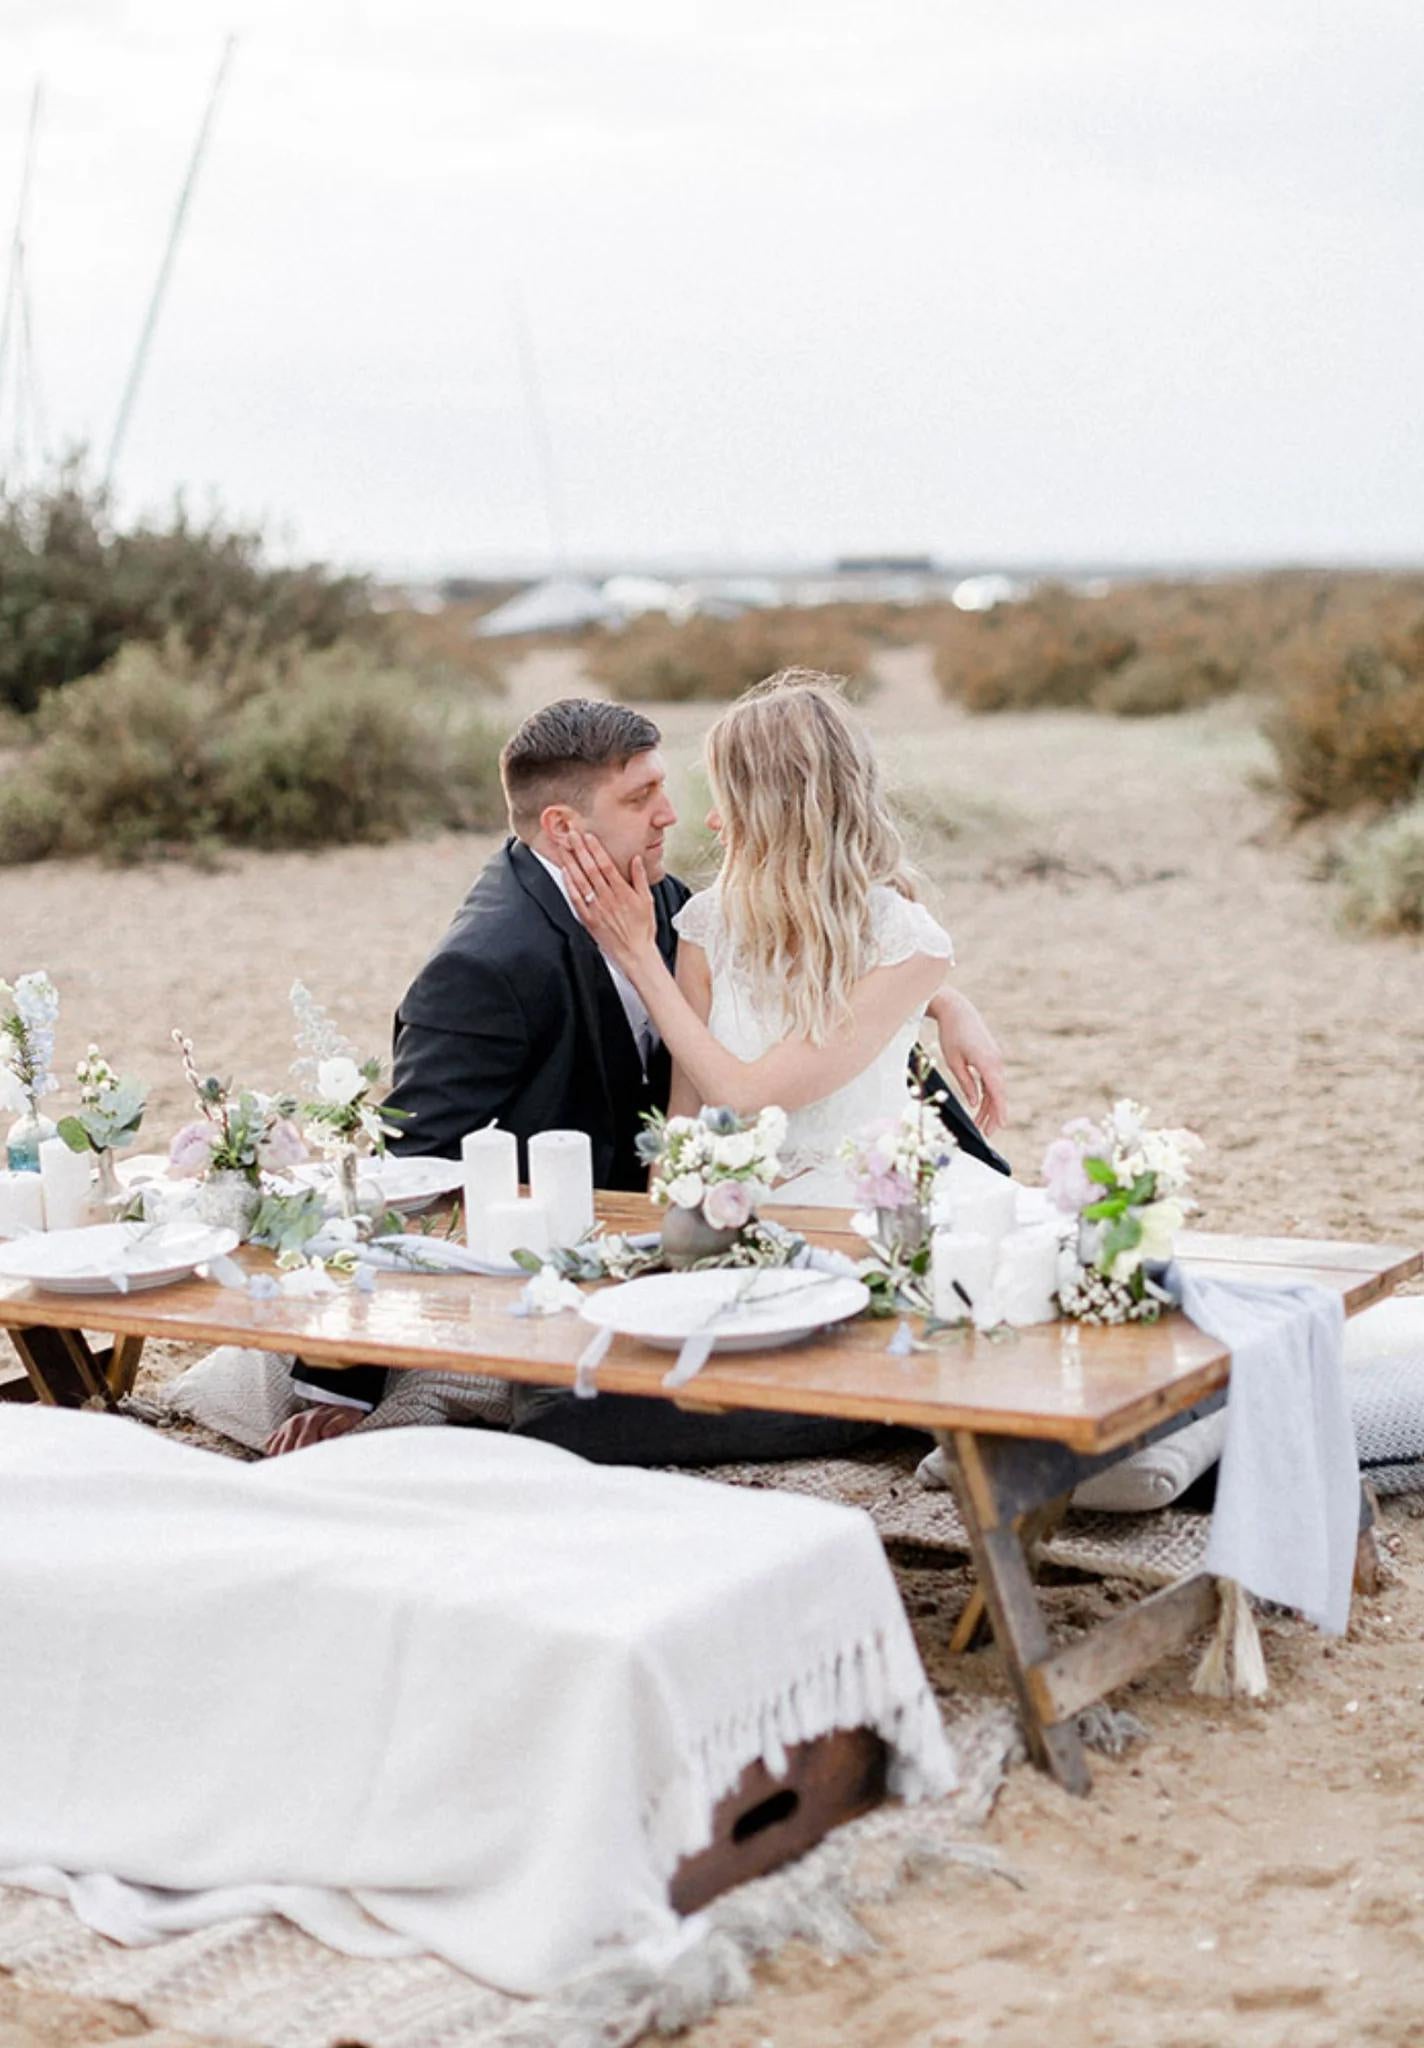 Bride and groom at coastal wedding table on a sandy beach